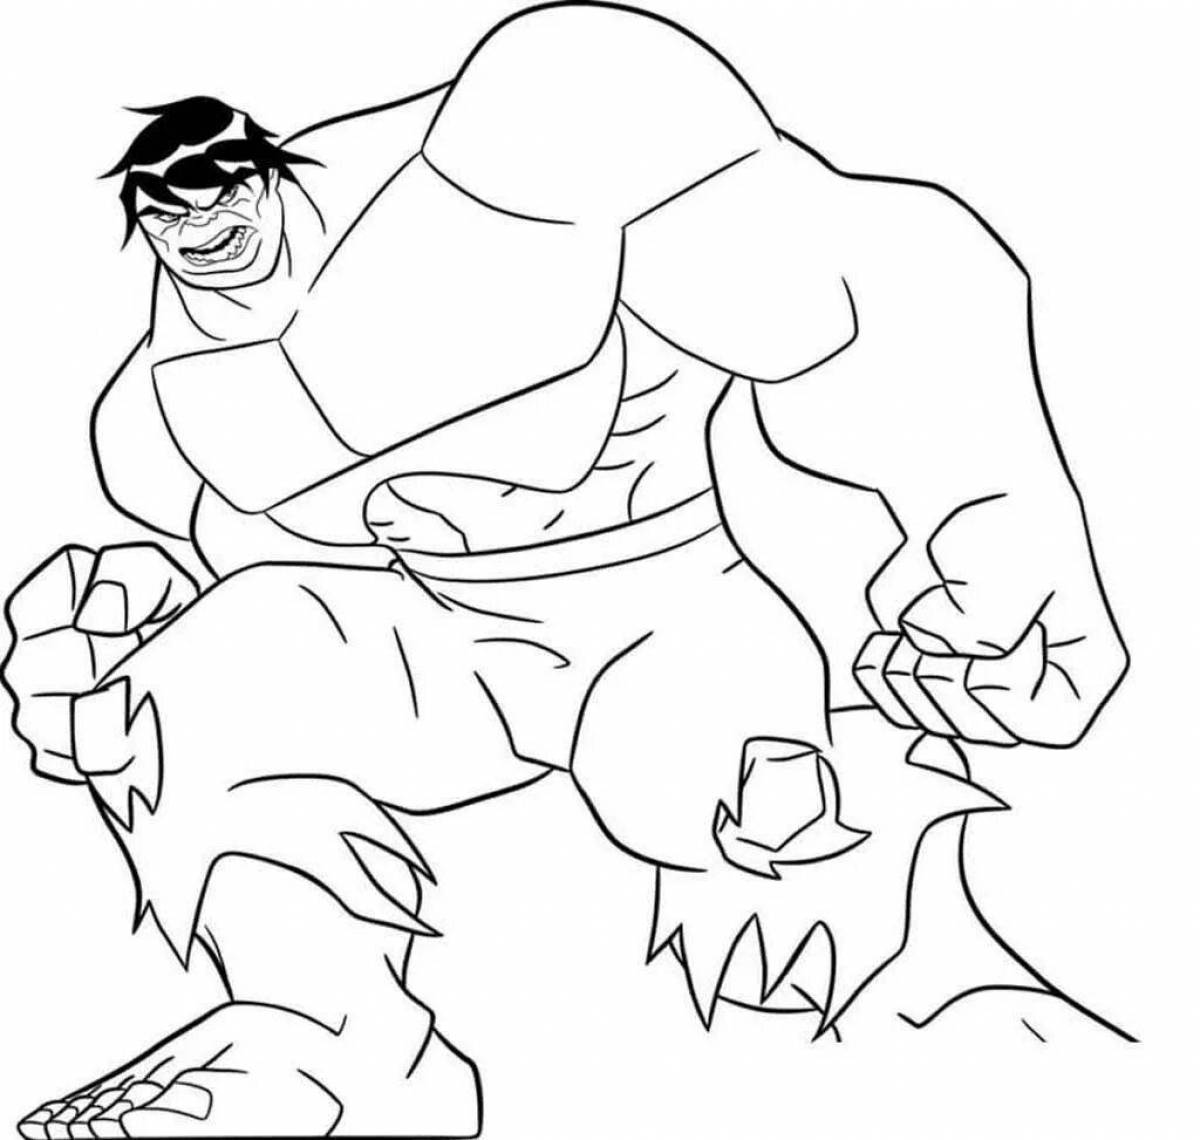 Grand Hulk coloring book